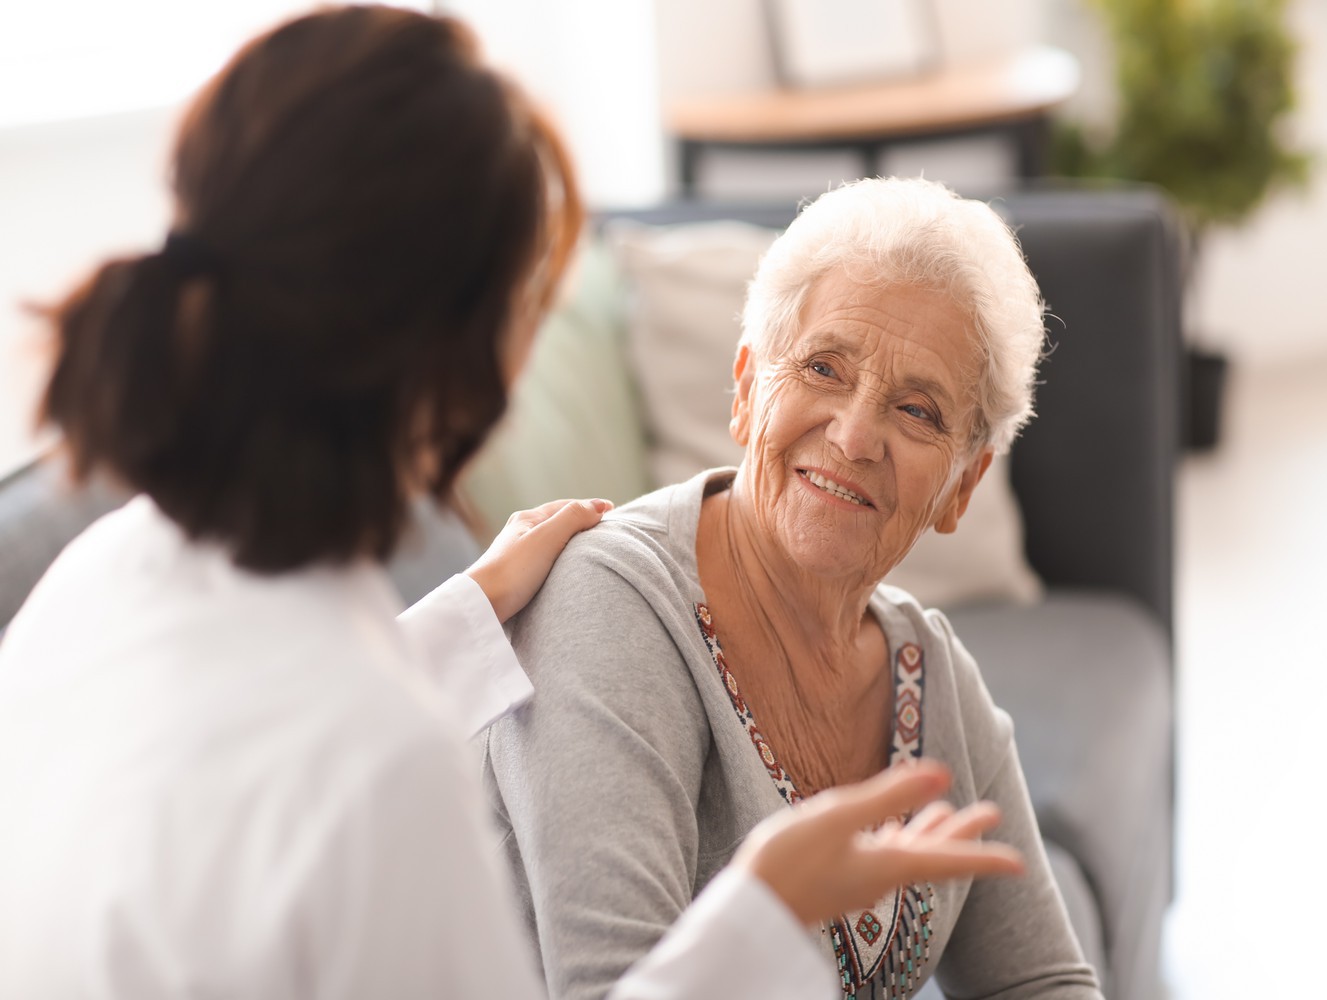 Aide personne âgée : comment obtenir une allocation ? Que faire en cas de “petite” retraite ? Les aides financières et matérielles